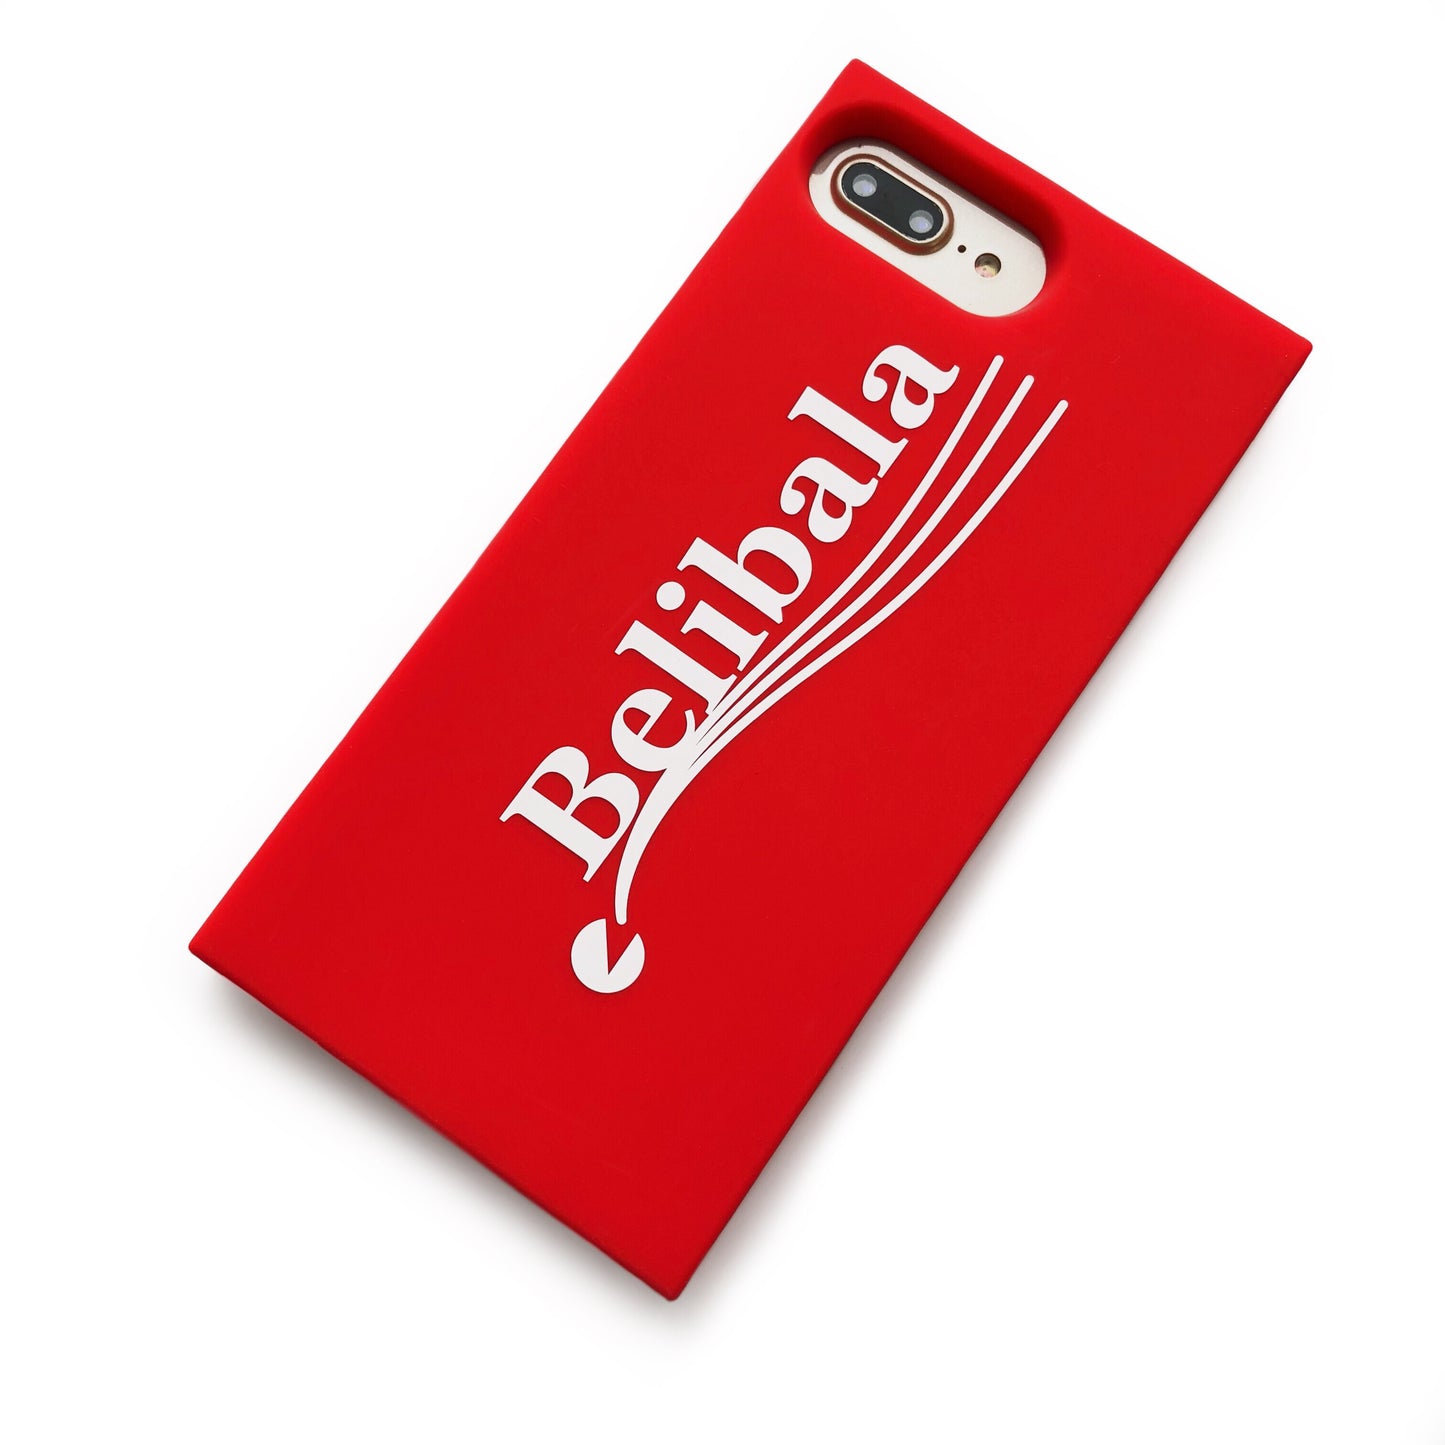 iPhone 7 Plus/8 Plus Simple Case - Belibala (Red)